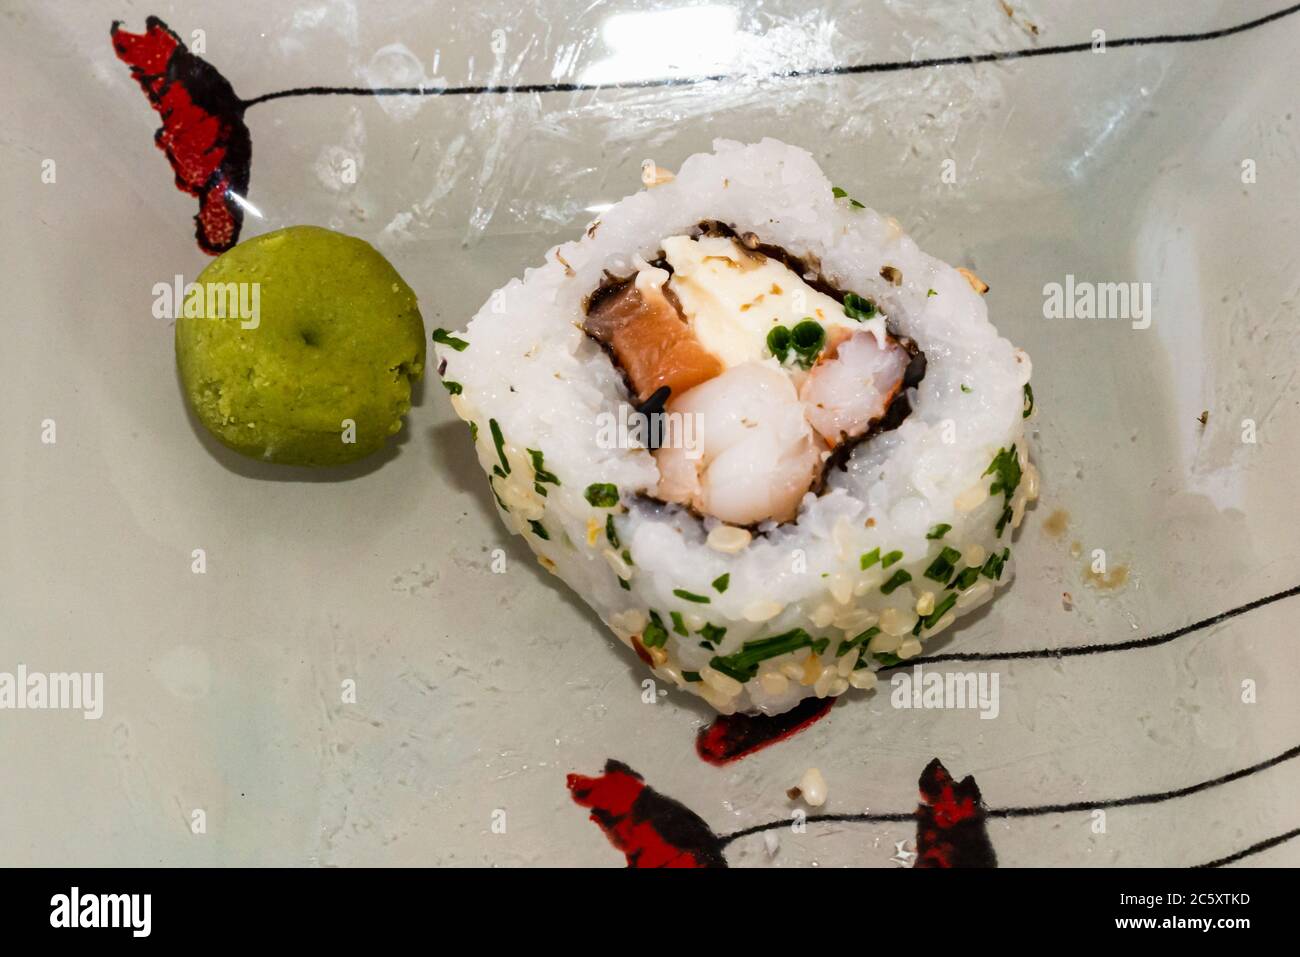 Les sushis japonais sont excellents. Maki et petits pains au thon, au saumon et à l'avocat. Vue de dessus du rouleau de sushi. wasabi. Foyer sélectif. Banque D'Images